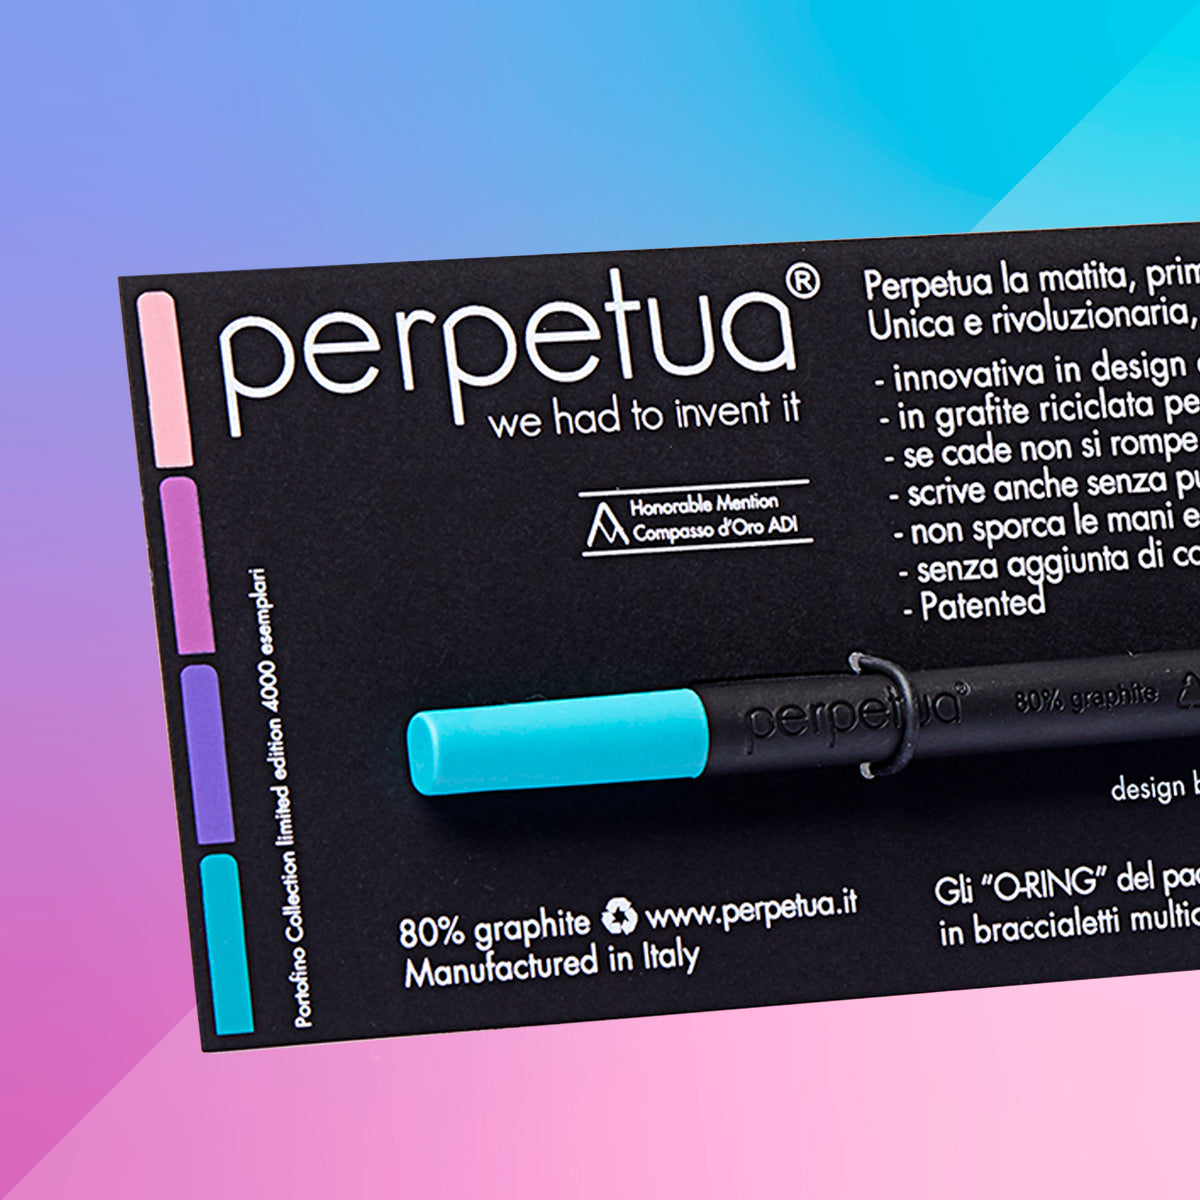 Perpetua - The Pencil Perpetua